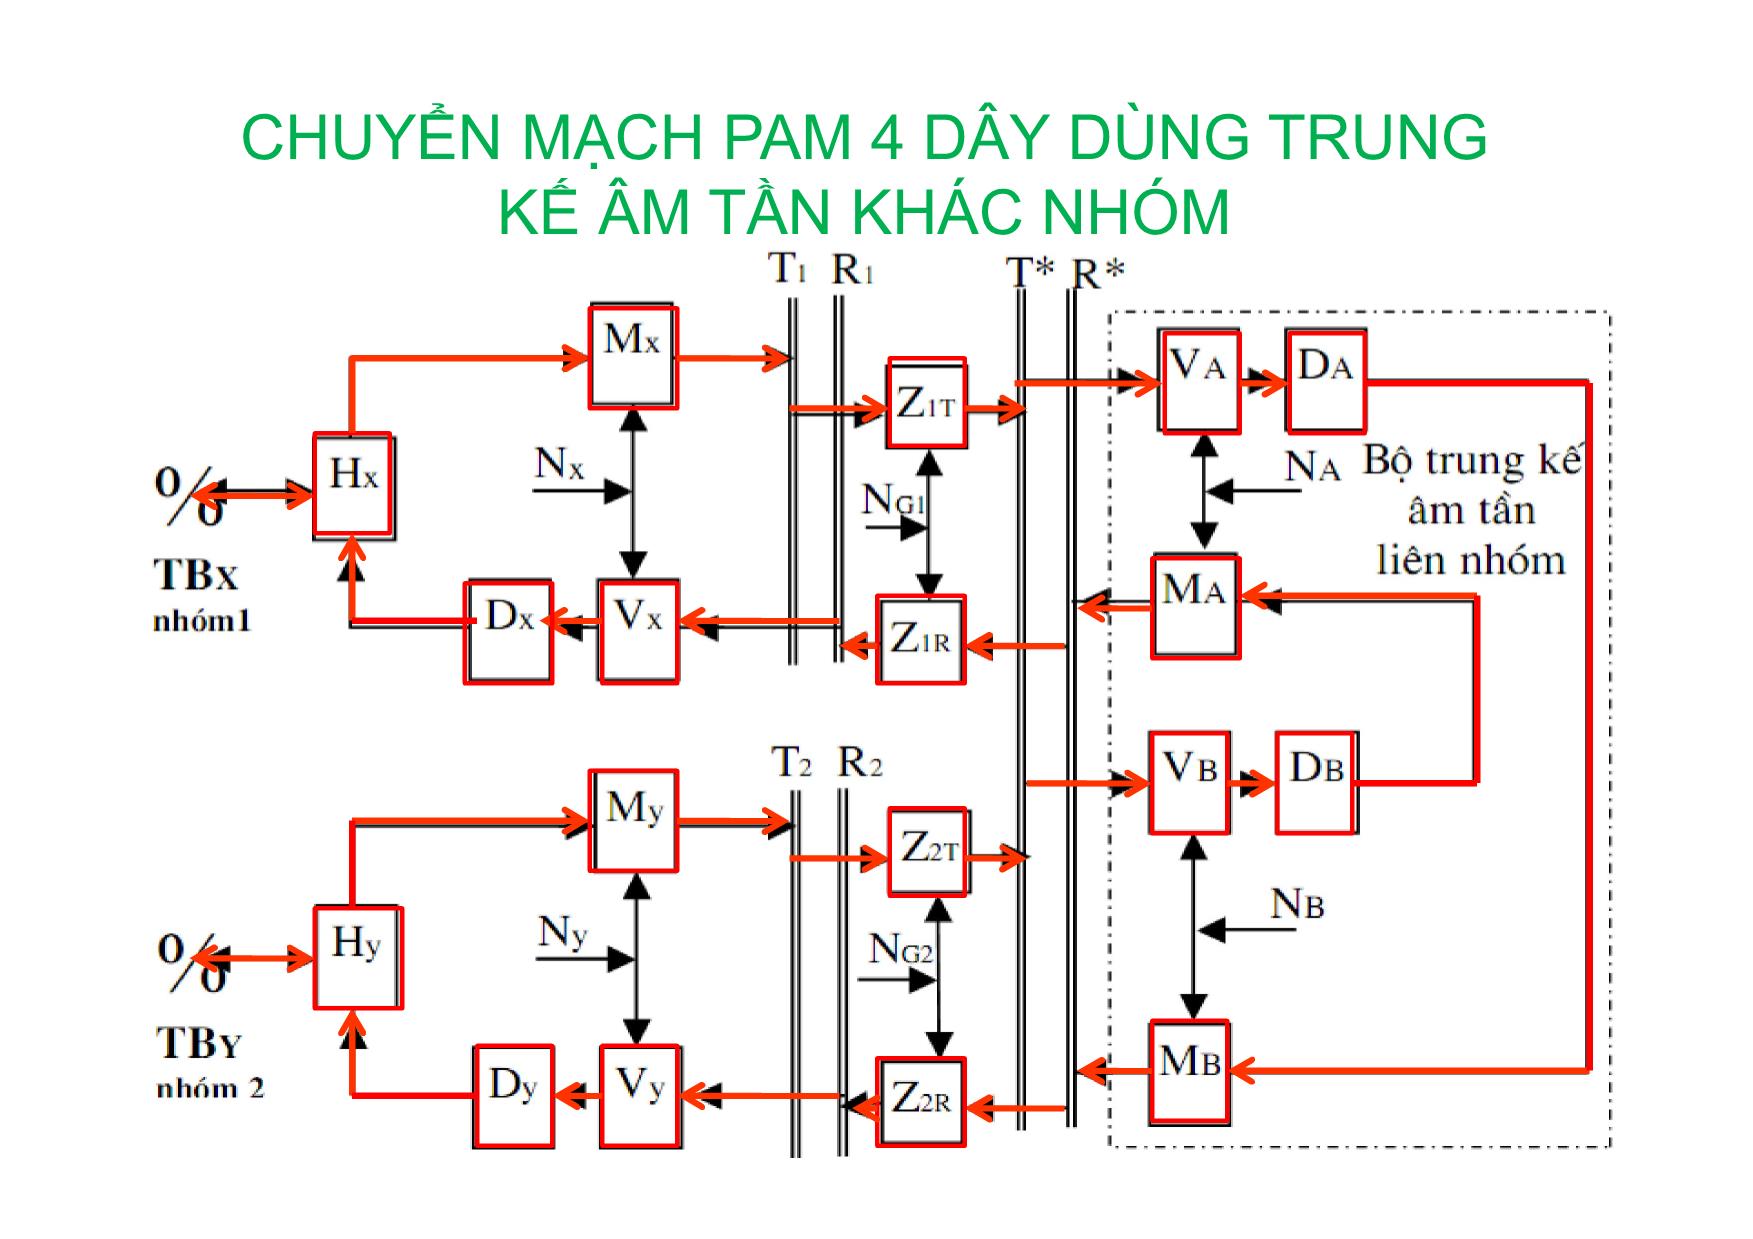 Bài giảng Kỹ thuật chuyên mạch - Chương 3: Chuyển mạch PAM 4 dây dùng trung kế âm tần cùng nhóm trang 6